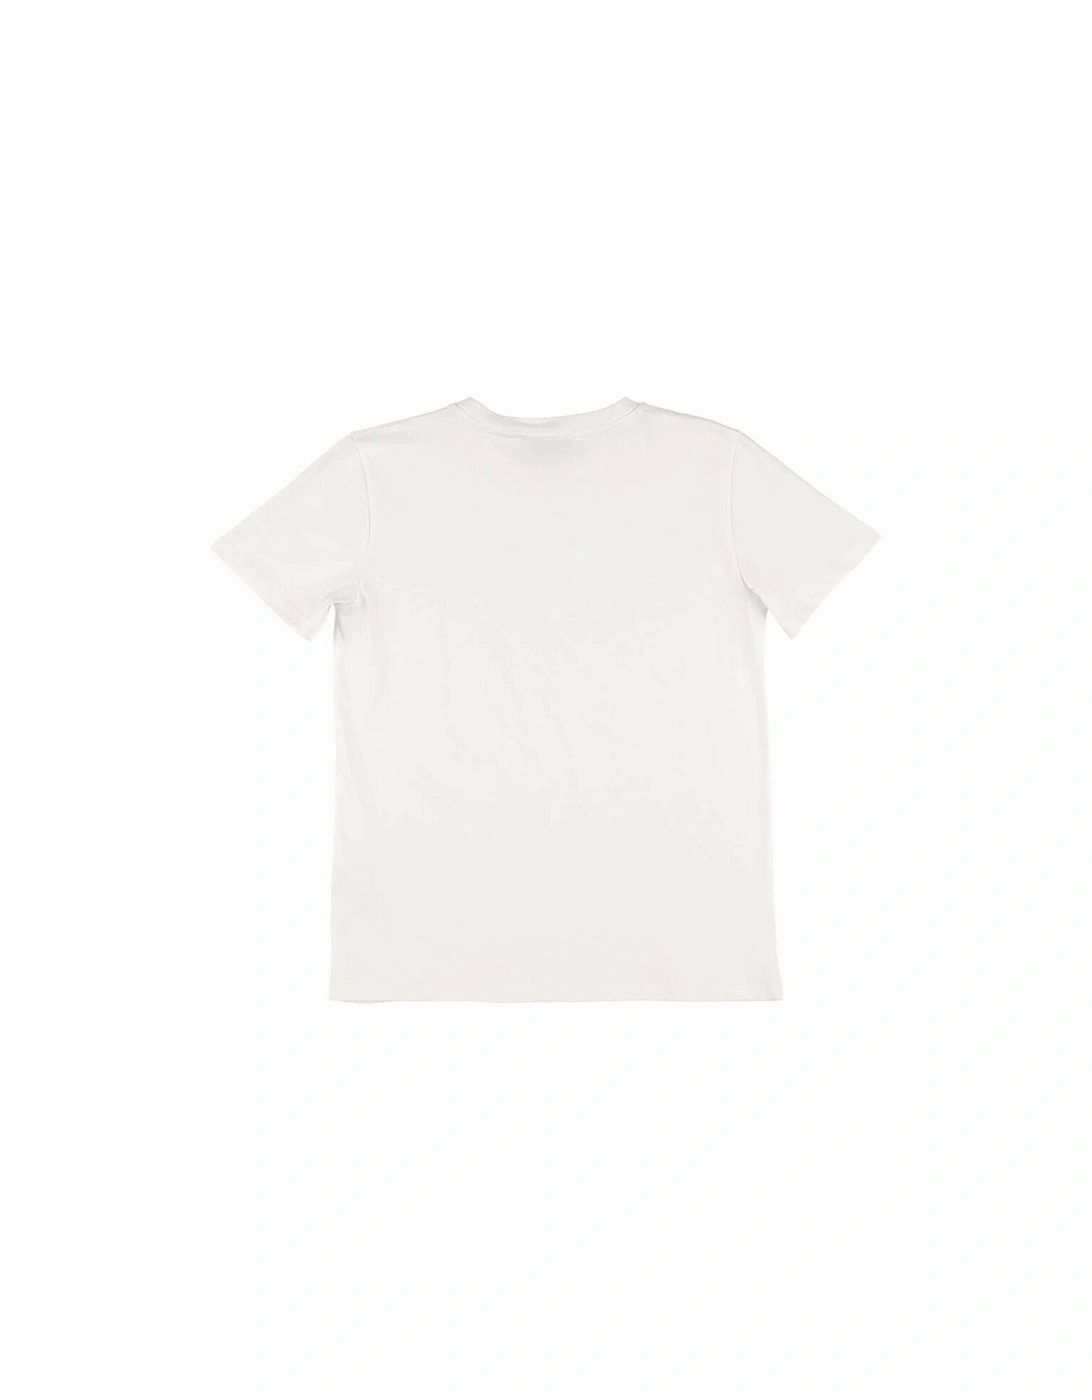 Boys Silver Tone Logo T-shirt White